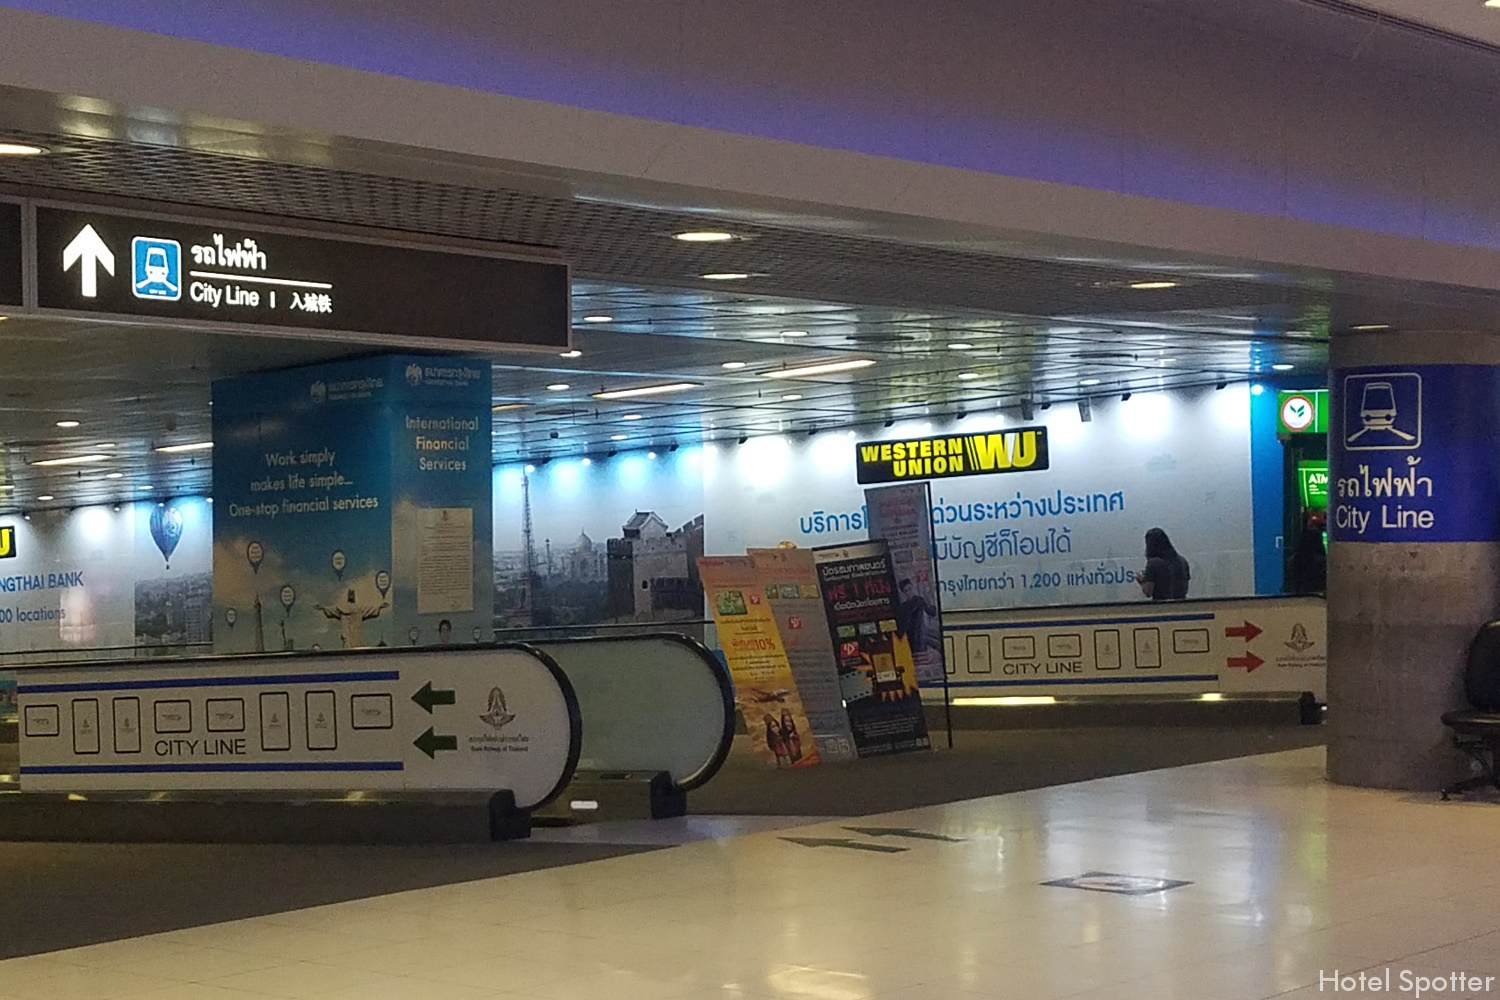 Bangkok, Tajlandia - informacje praktyczne i porady - airport rail link